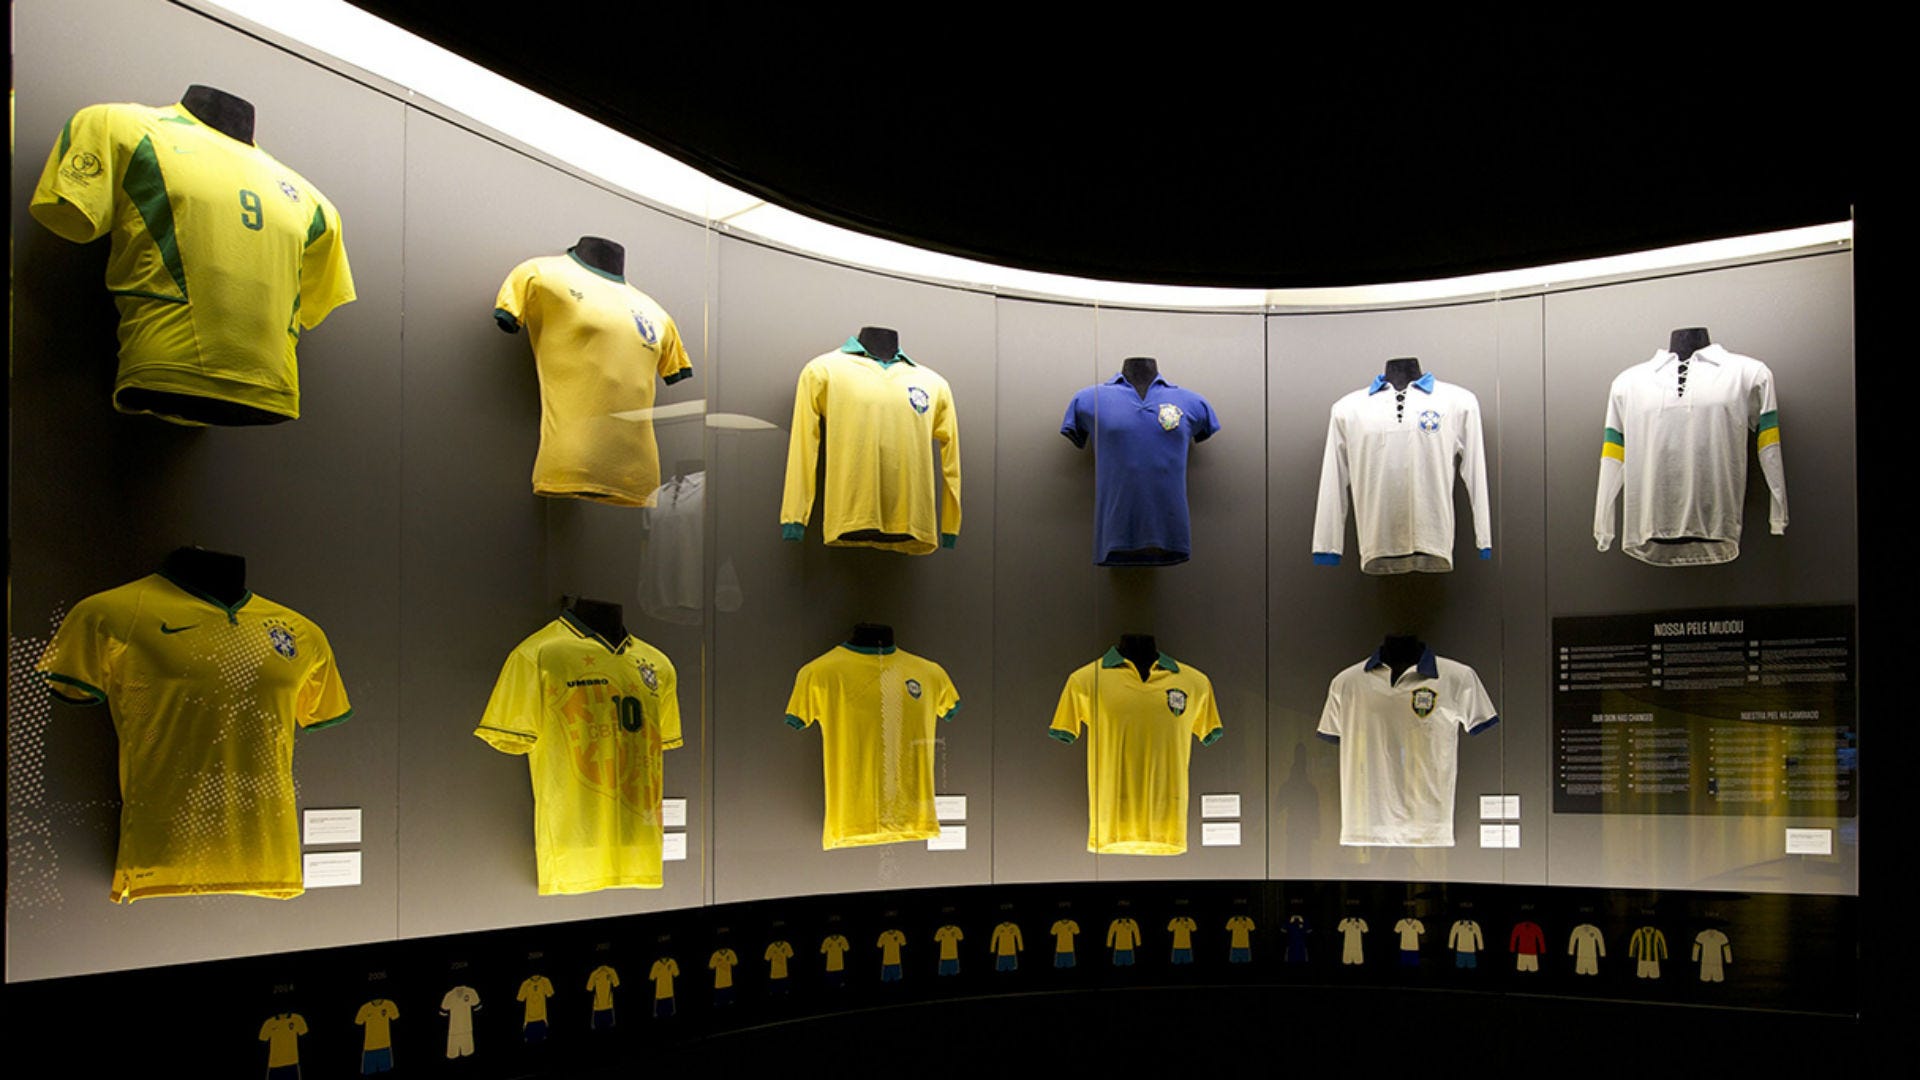 Copa do Mundo 2018! Veja as camisas oficiais das seleções